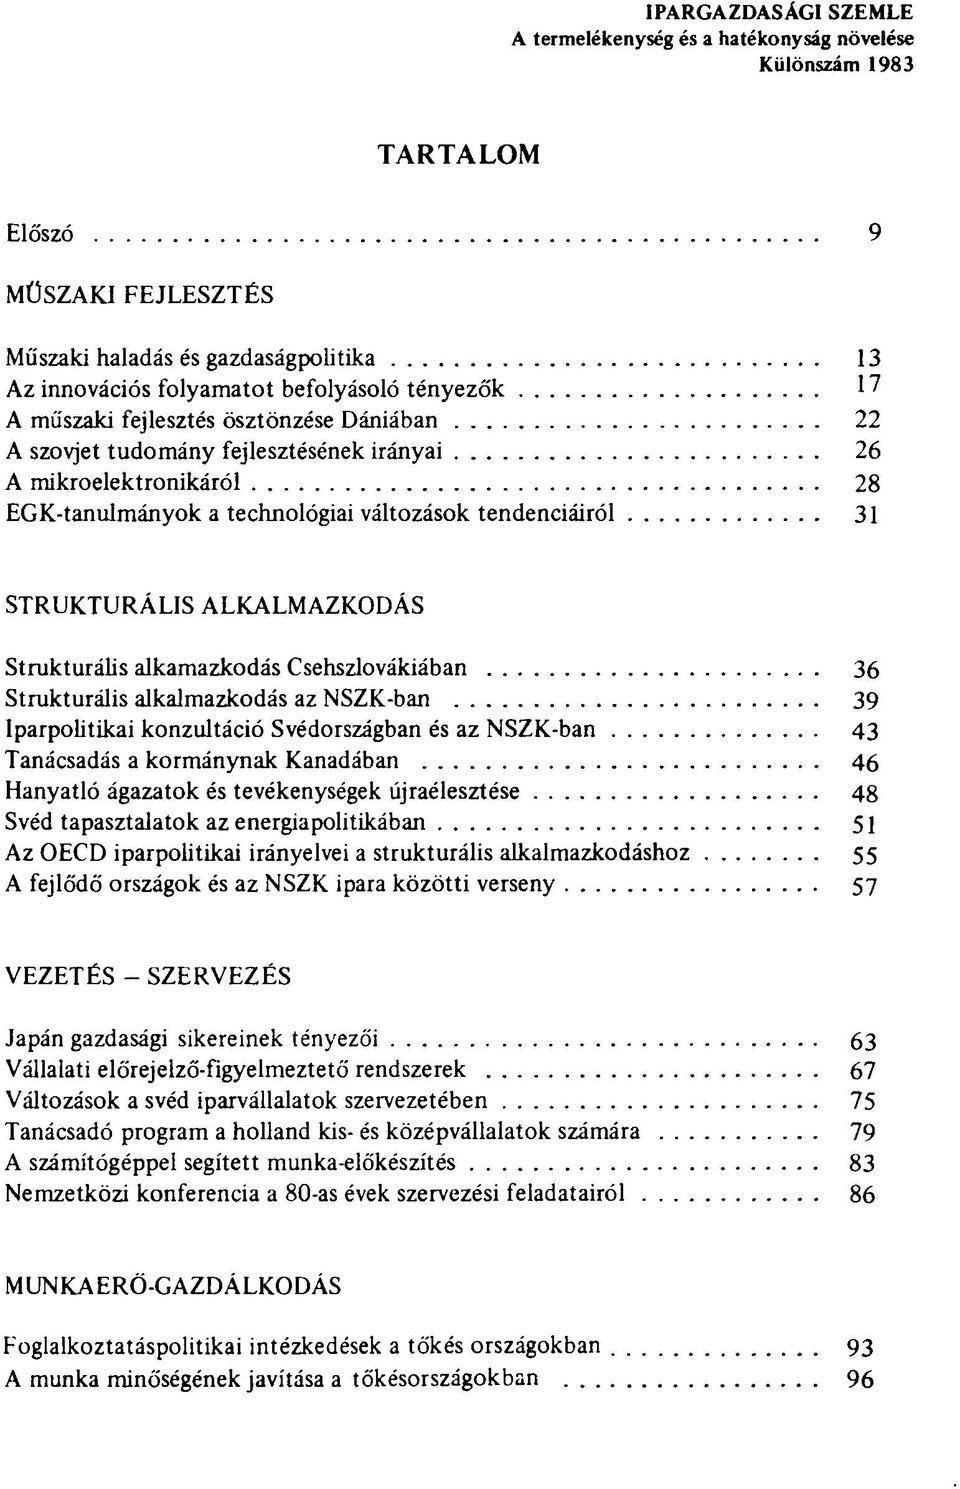 ALKALMAZKODÁS Strukturális alkamazkodás Csehszlovákiában 36 Strukturális alkalmazkodás az NSZK-ban 39 Iparpolitikai konzultáció Svédországban és az NSZK-ban 43 Tanácsadás a kormánynak Kanadában 46